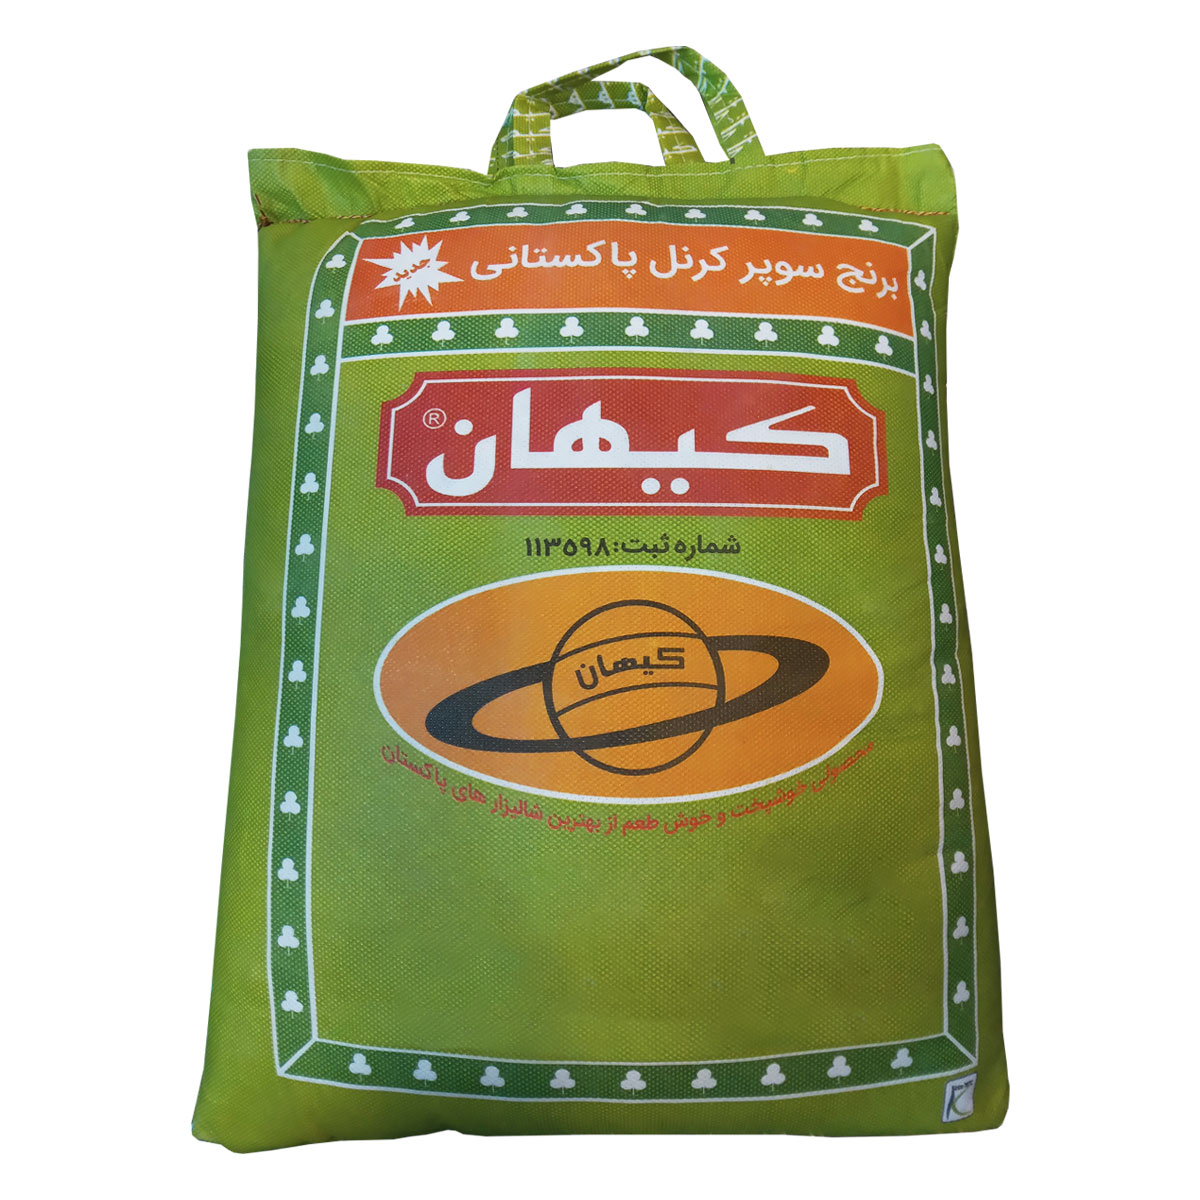 نکته خرید - قیمت روز برنج پاکستانی دانه بلند کیهان - 10 کیلوگرم خرید